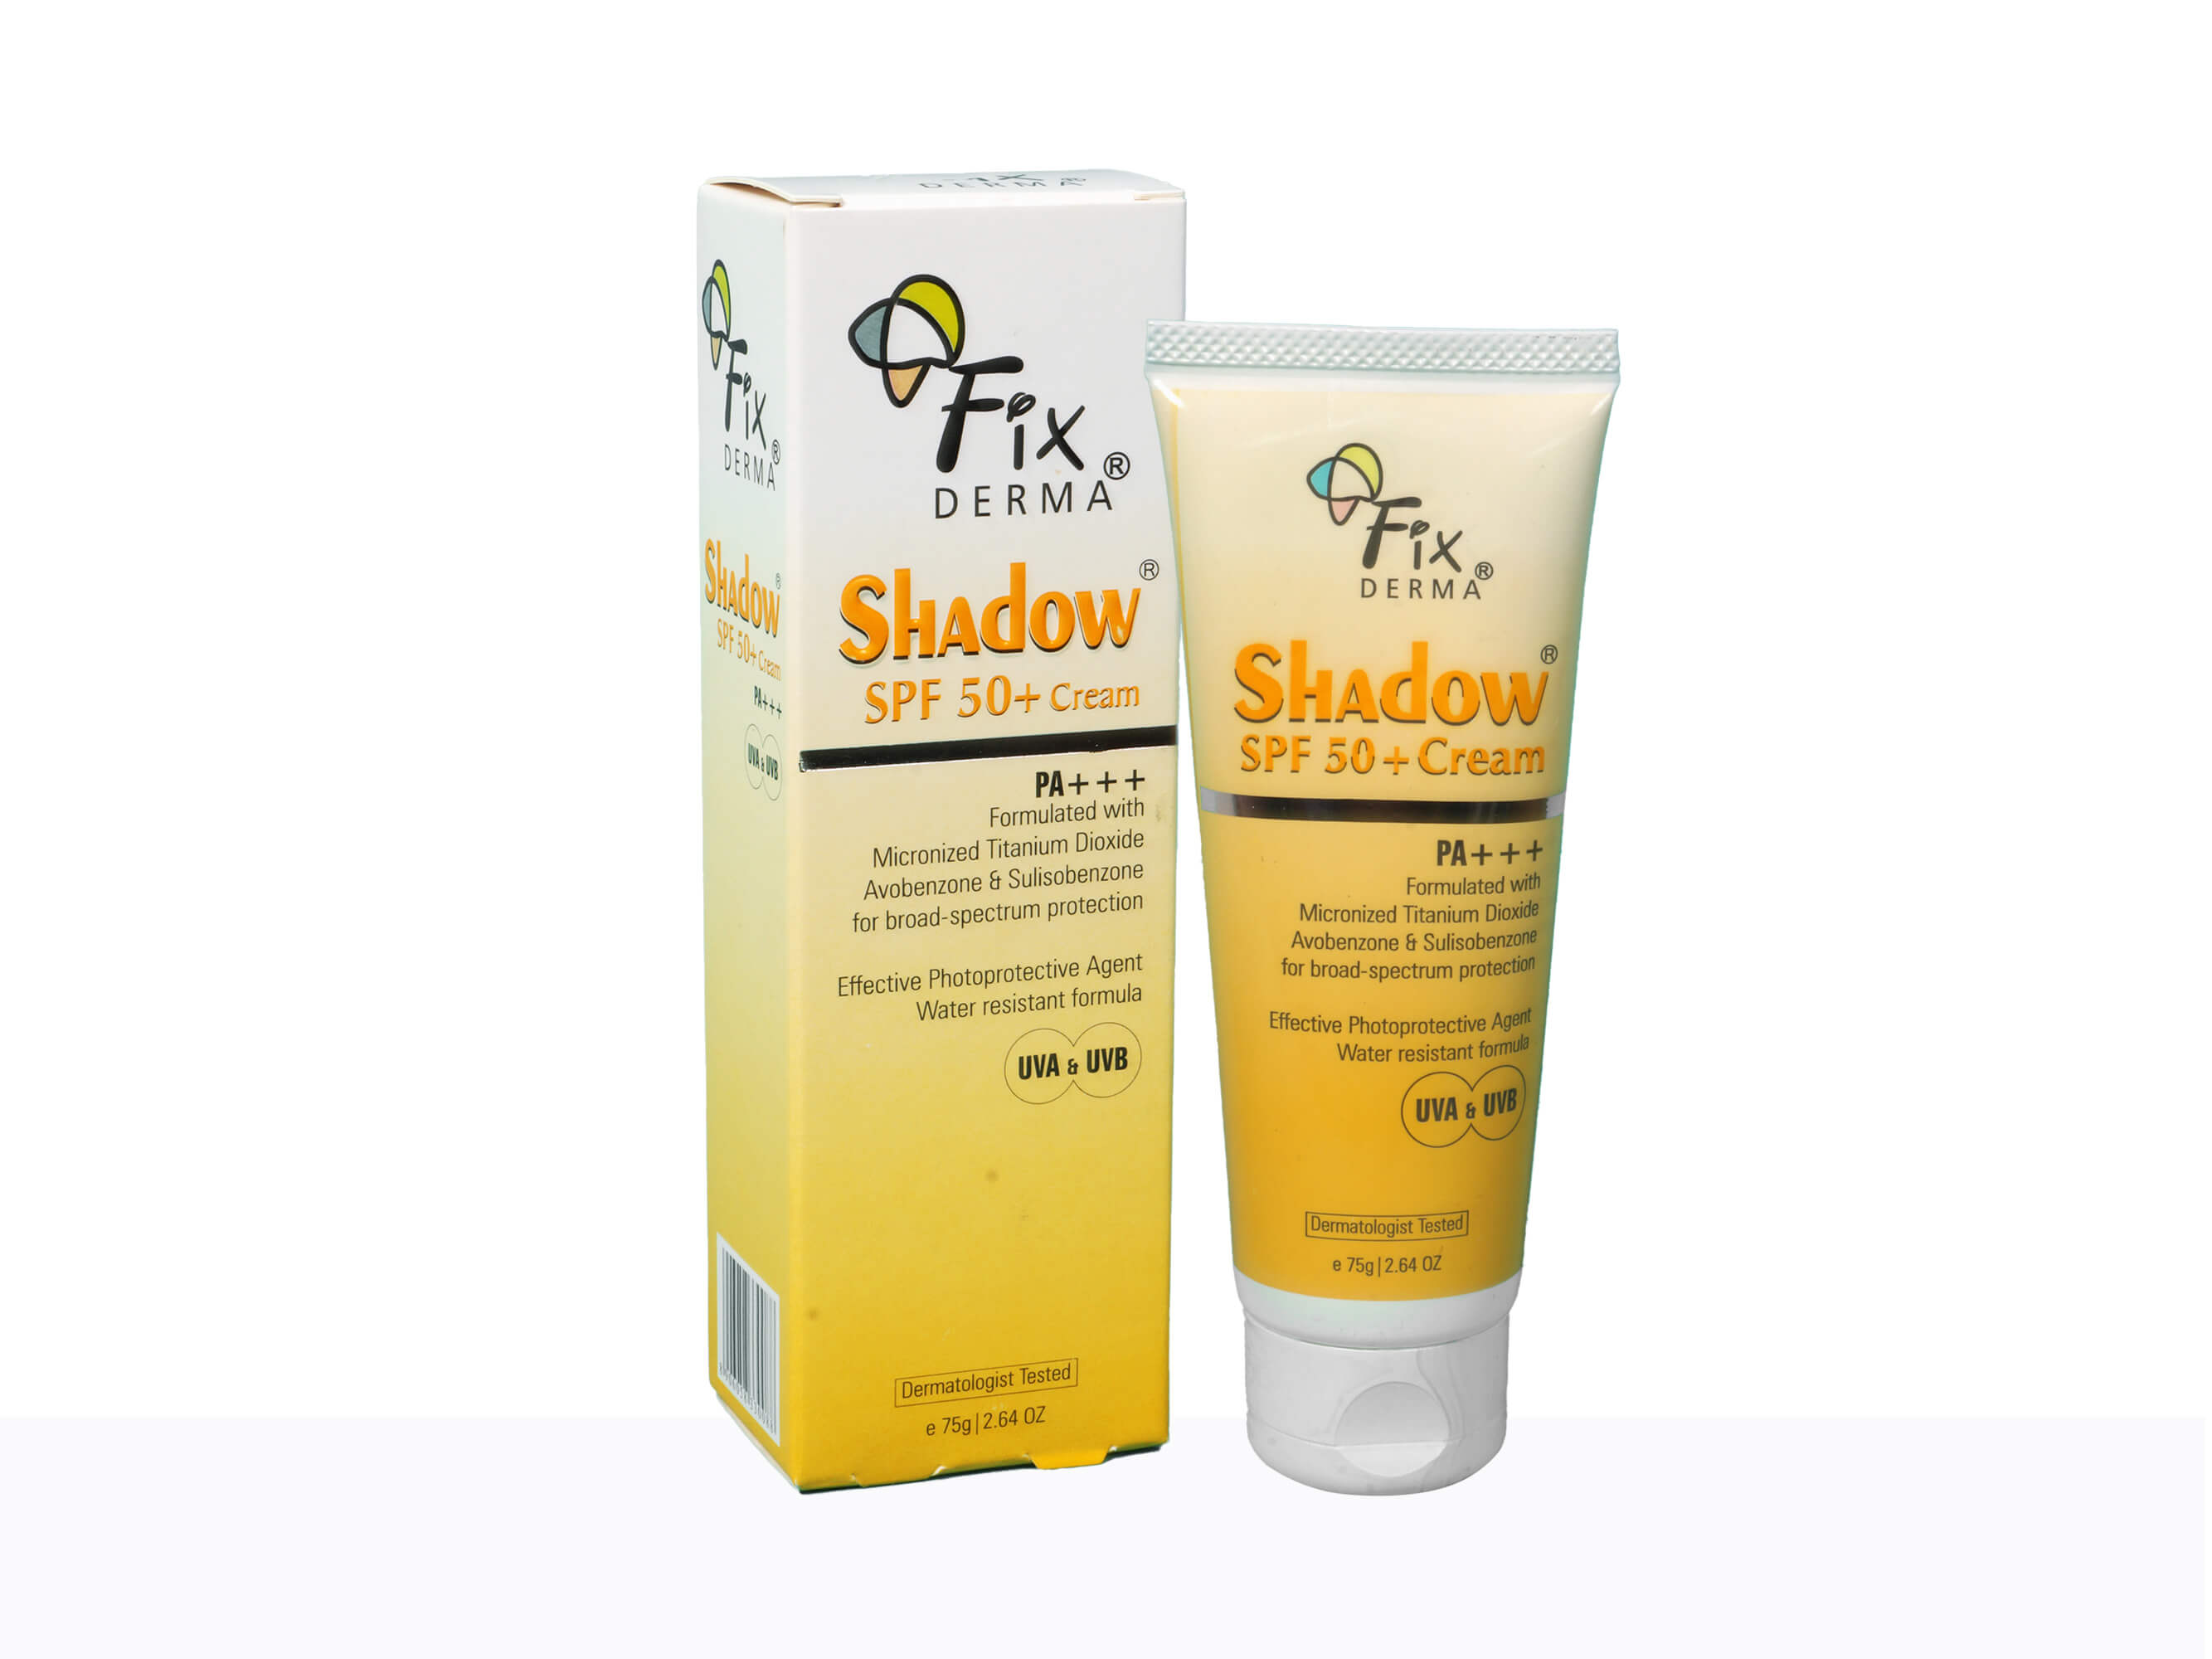 Fixderma Shadow SPF 50+ Cream - Clinikally